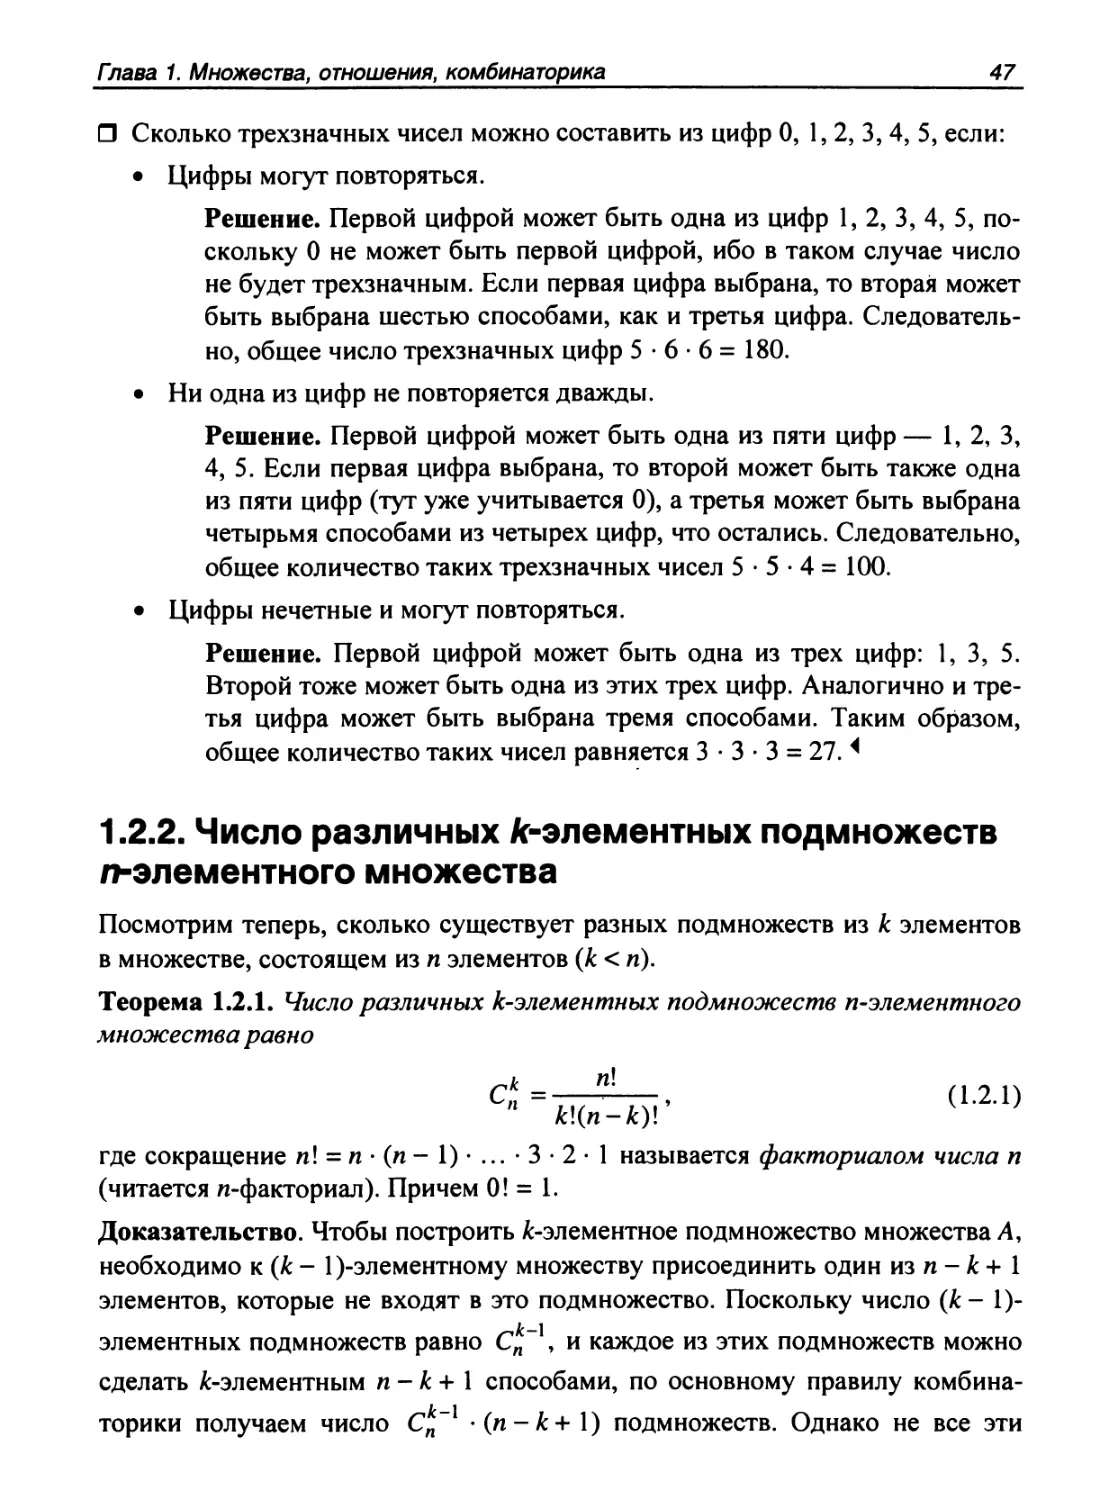 1.2.2. Число различных k-элементных подмножеств n-элементного множества